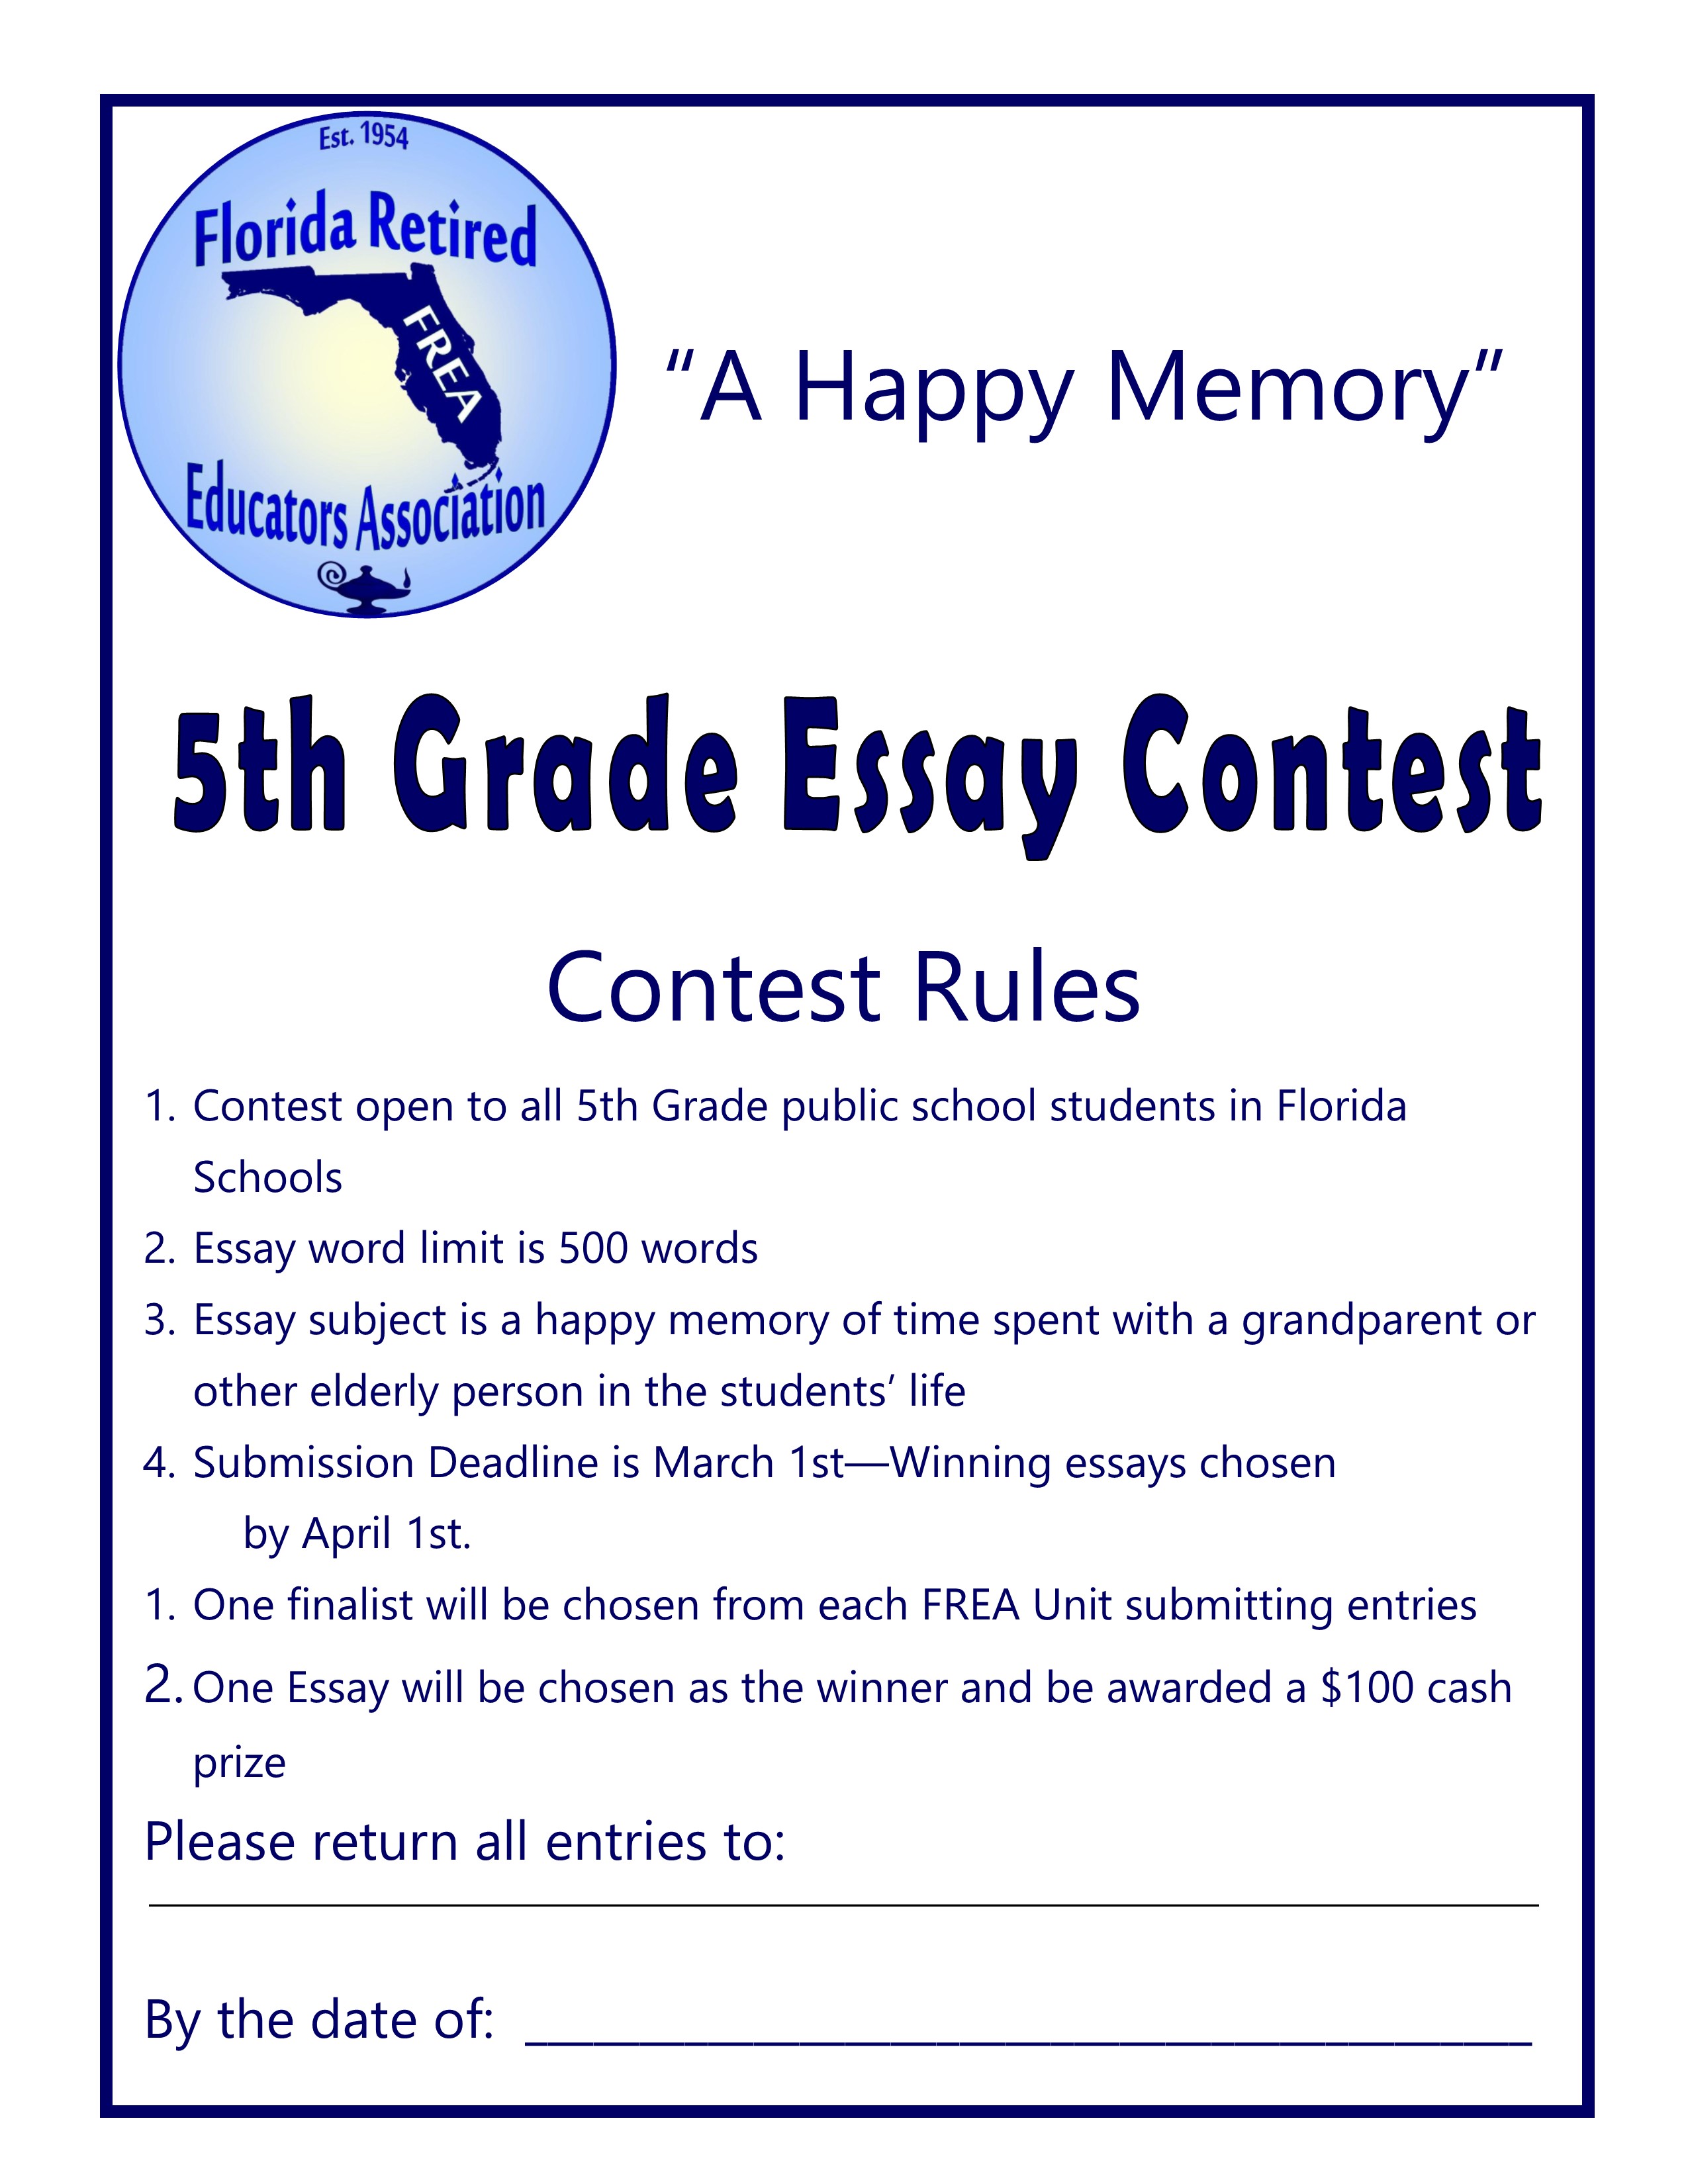 5th Grade Essay Contest Poster (2)